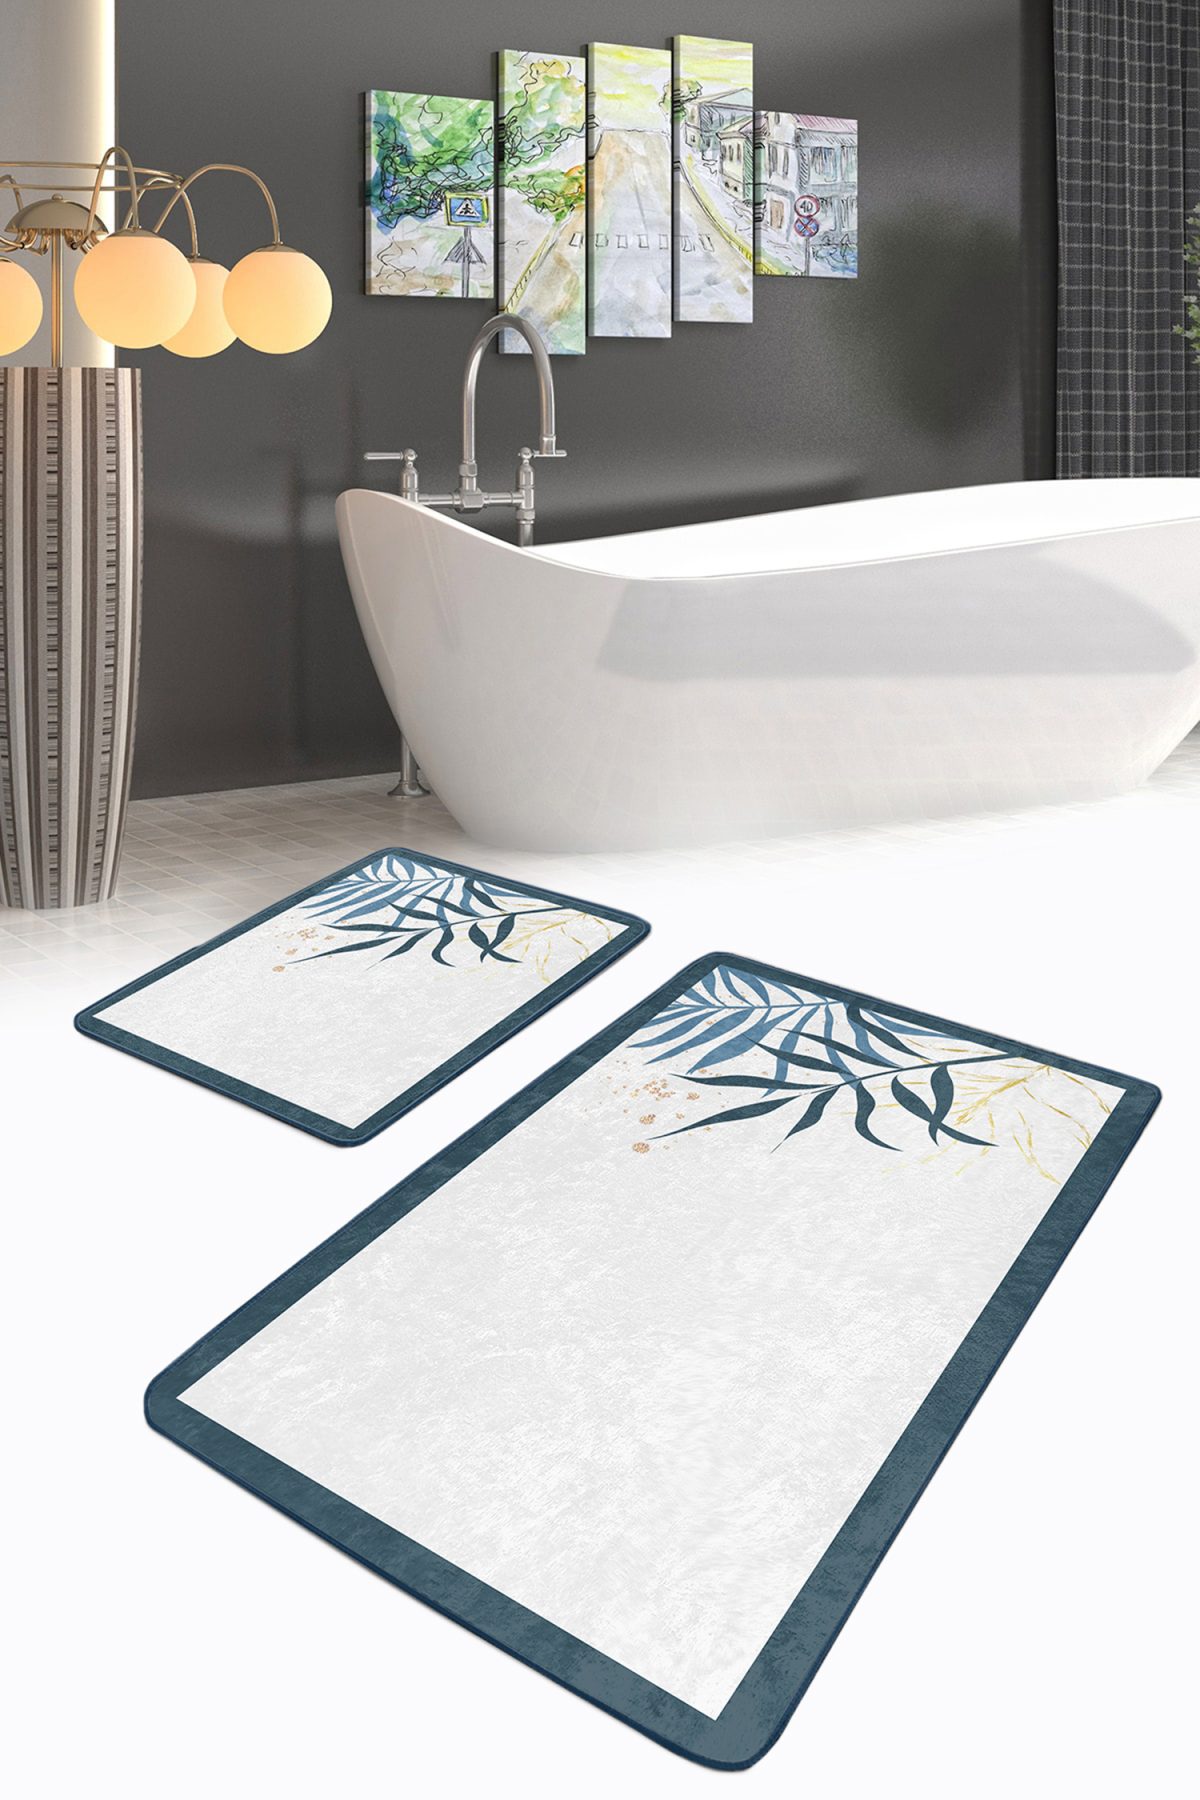 Beyaz Zeminde Renkli Yaprak Özel Tasarım Dijital Baskılı 2'li Kaymaz Tabanlı Banyo & Mutfak Paspas Takımı Realhomes